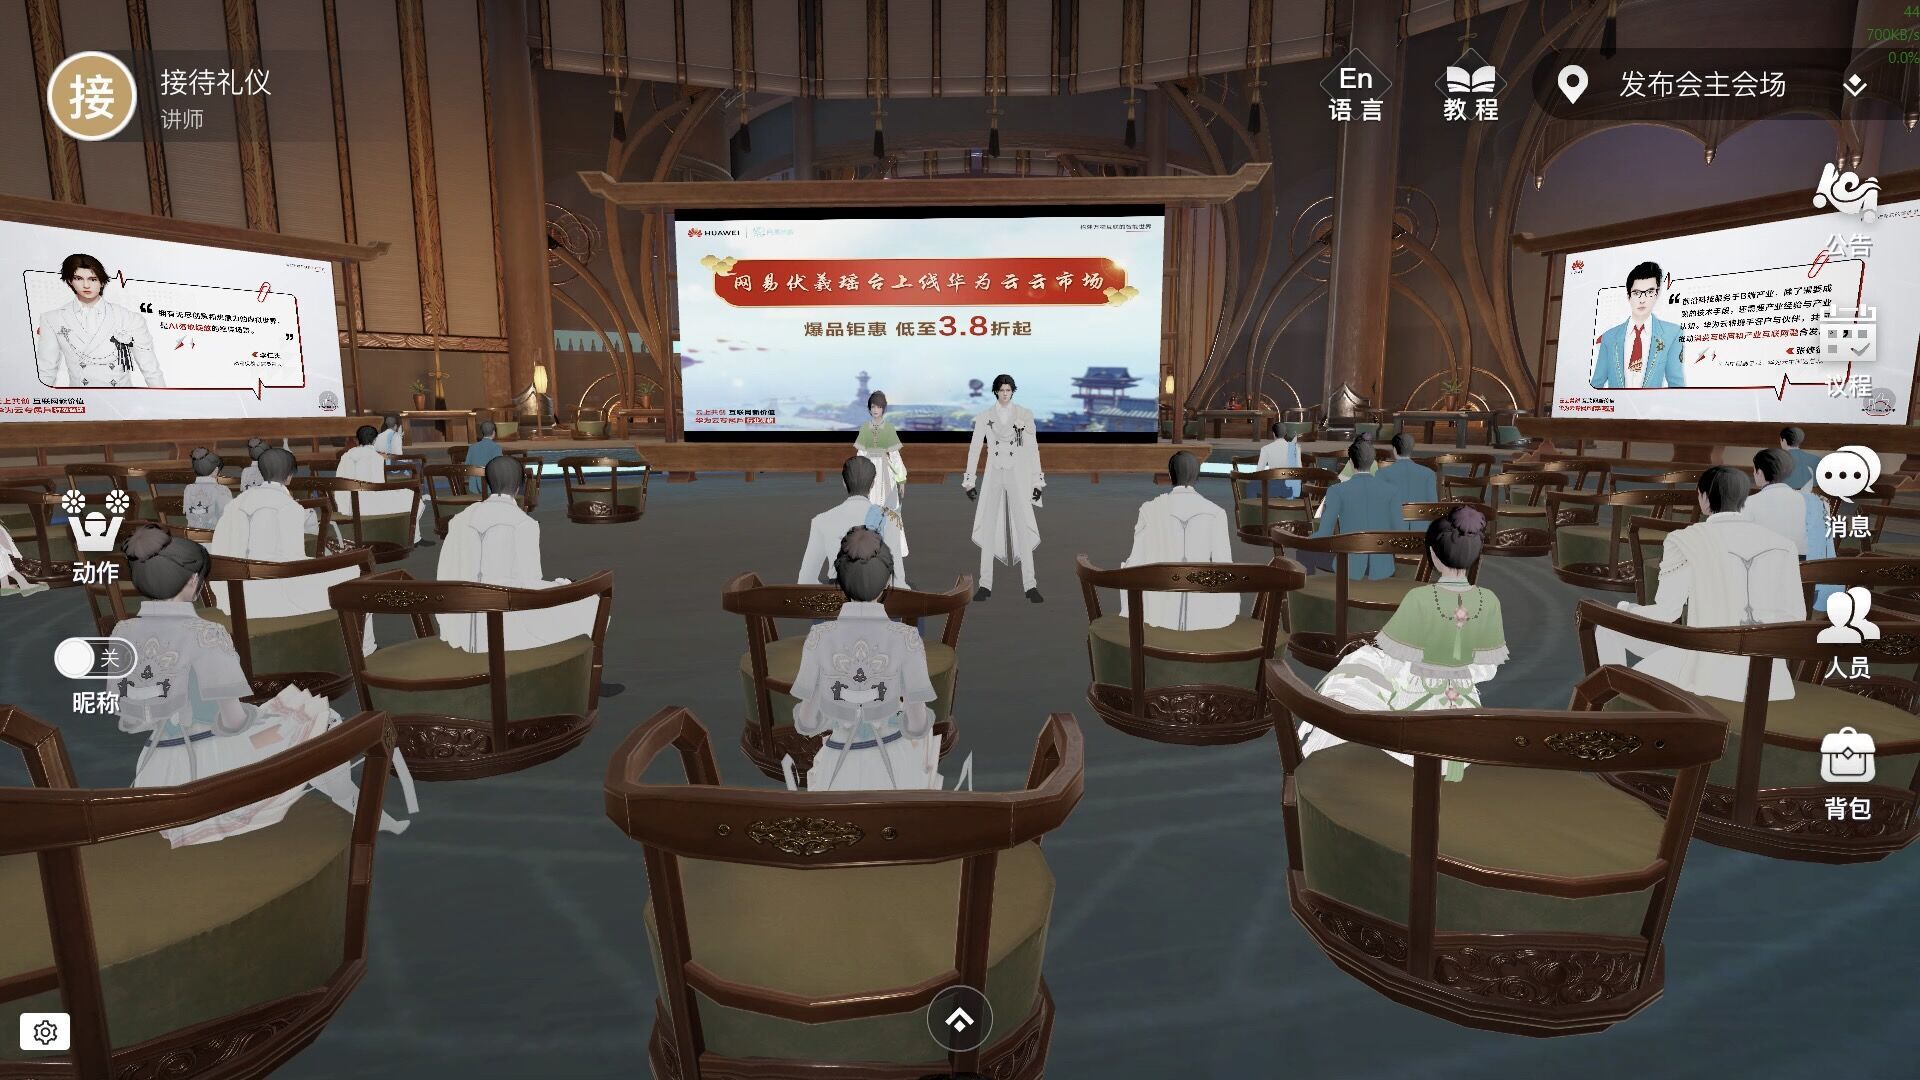 图片展示了一个虚拟现实的场景，里面有多个人物头戴VR设备坐在会场，前方有演讲者和大屏幕显示着演讲内容。